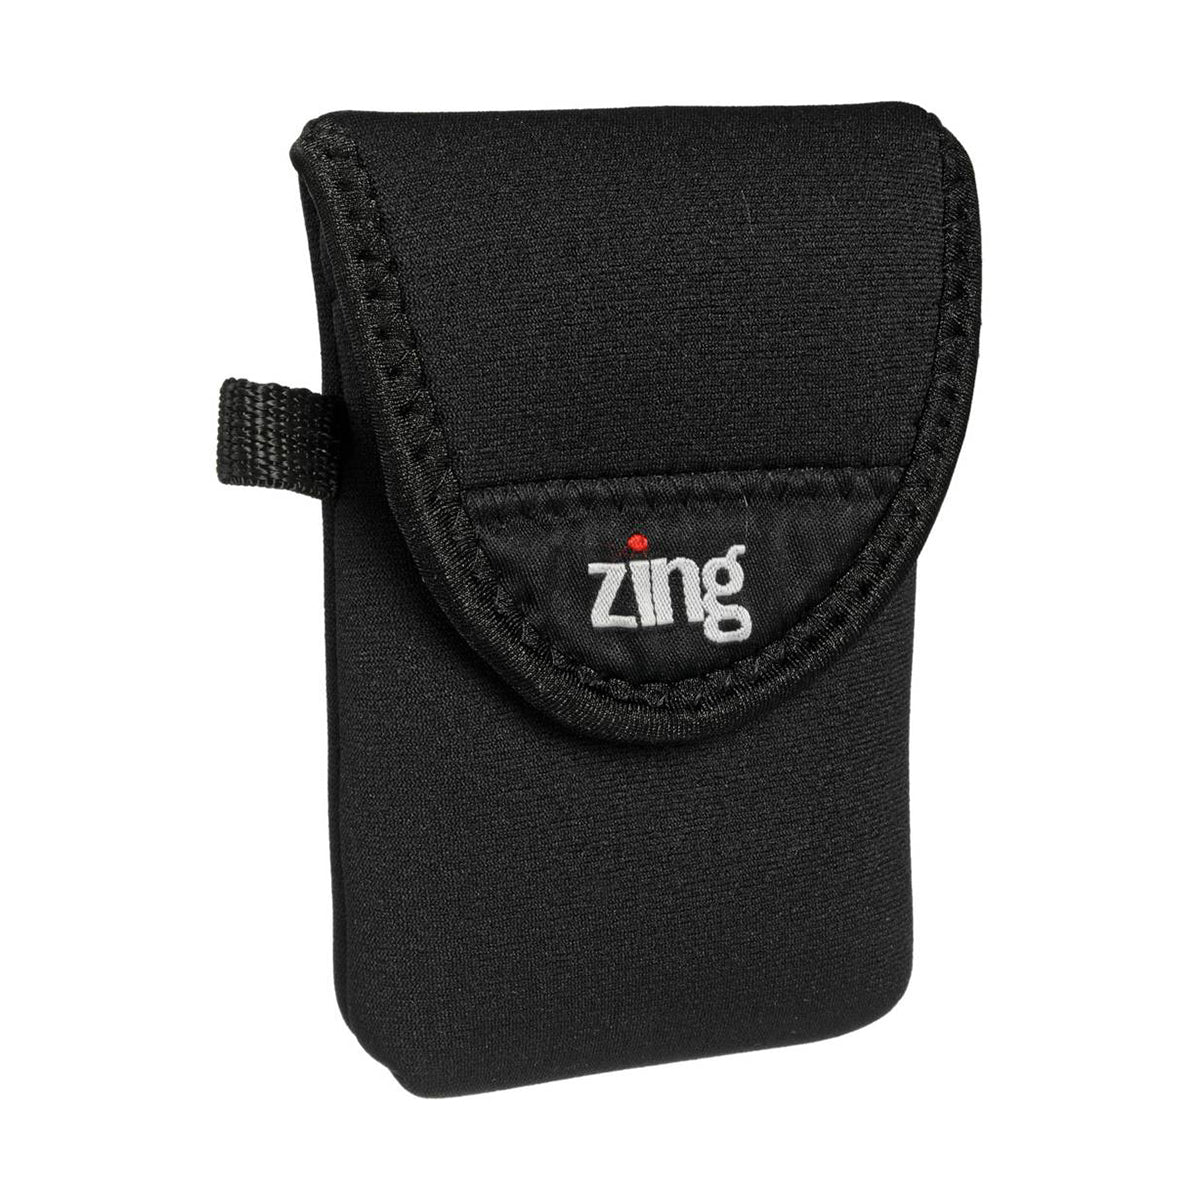 Zing Small Camera Belt Bag Black